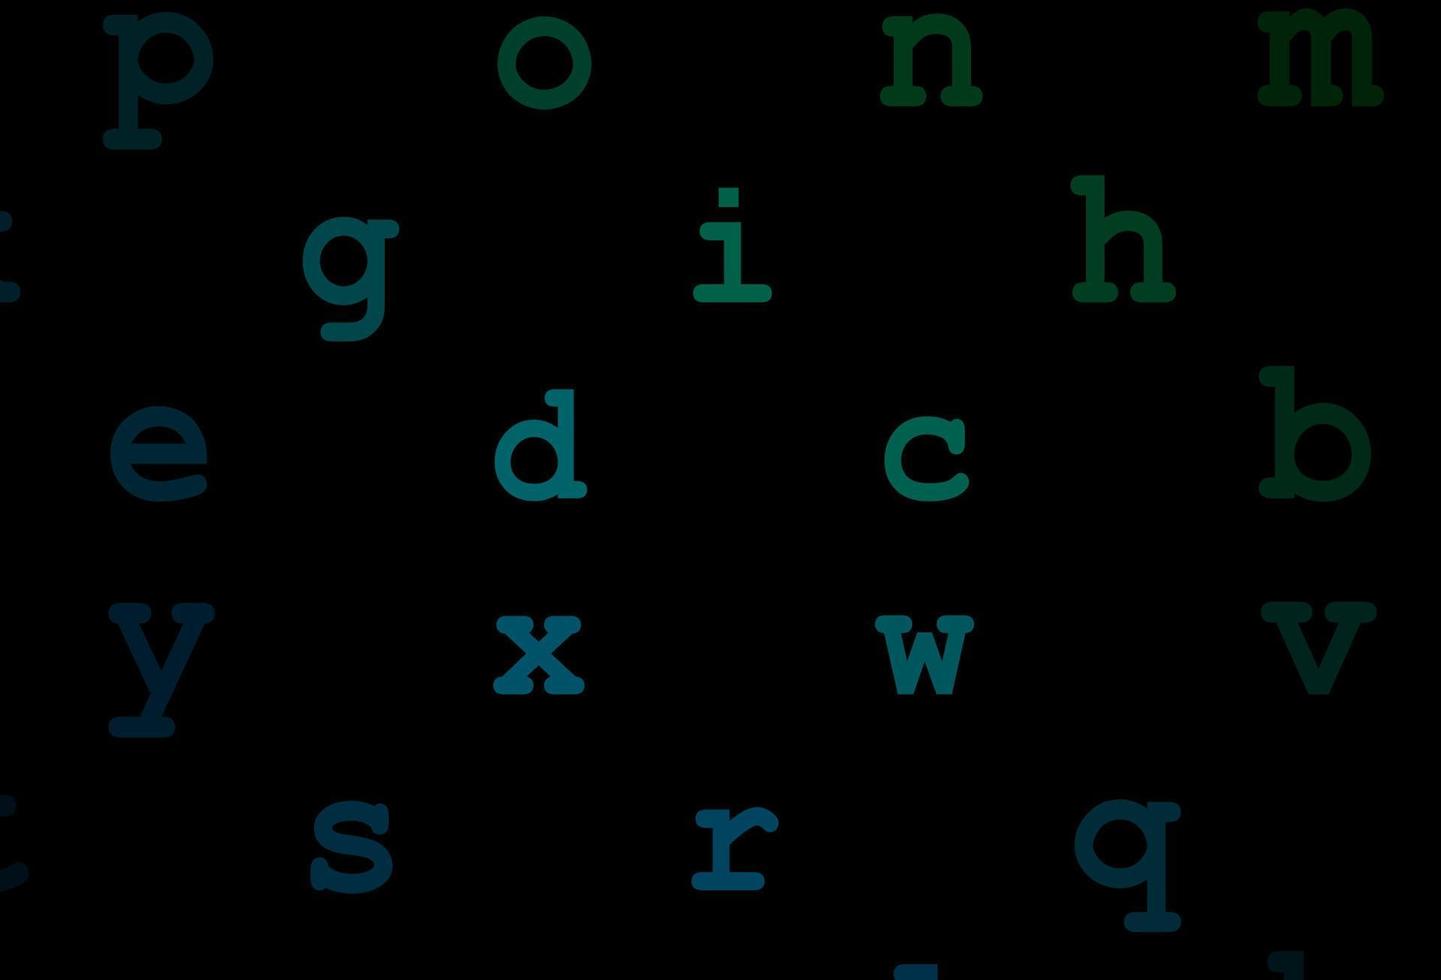 padrão de vetor azul e verde escuro com símbolos abc.